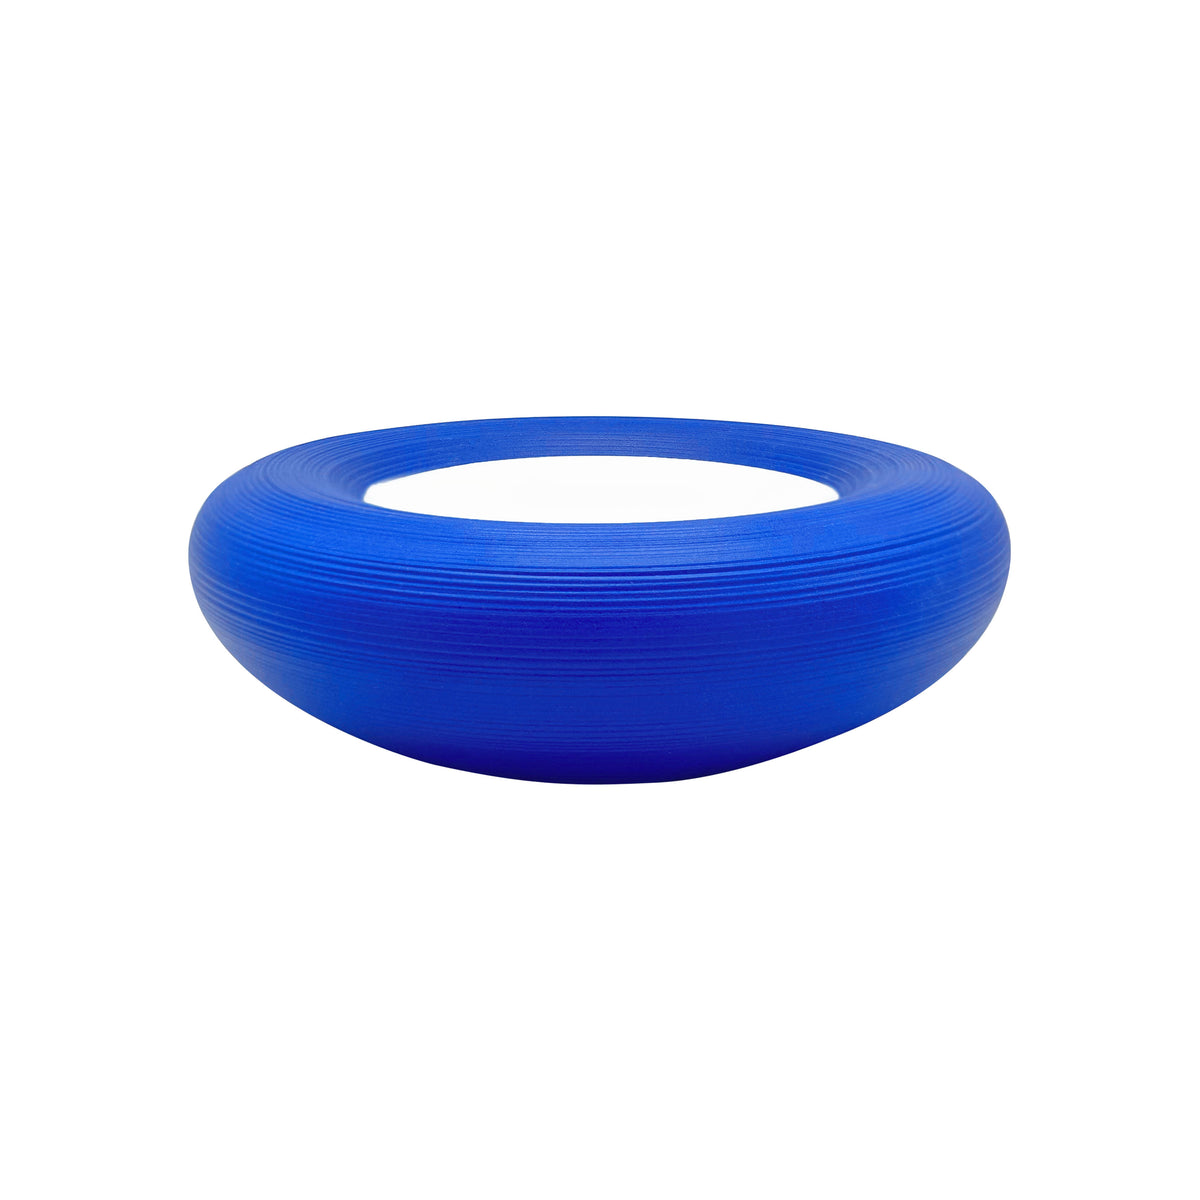 HEMISPHERE Bleu Roi - Bubble 9 cm